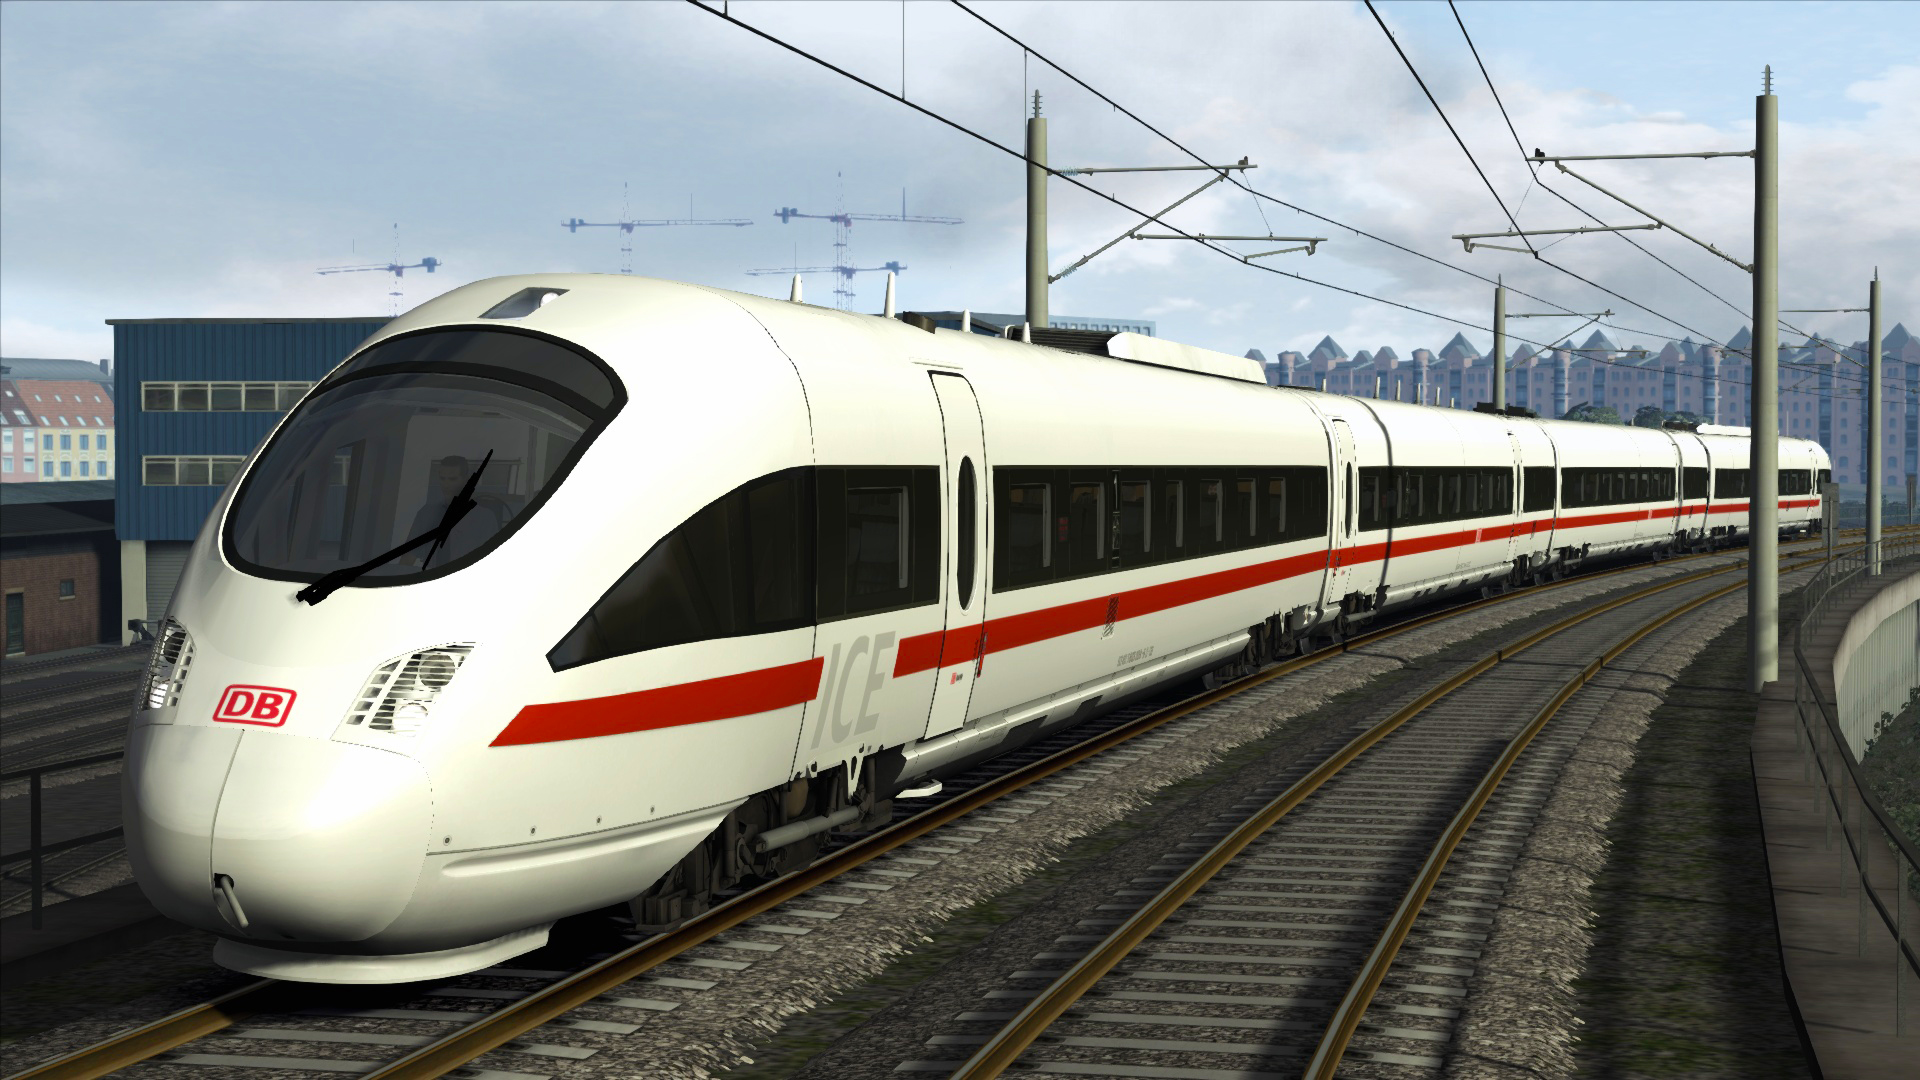 Train Simulator - DB BR 605 ICE TD Add-On DLC Steam CD Key, 1.34 usd